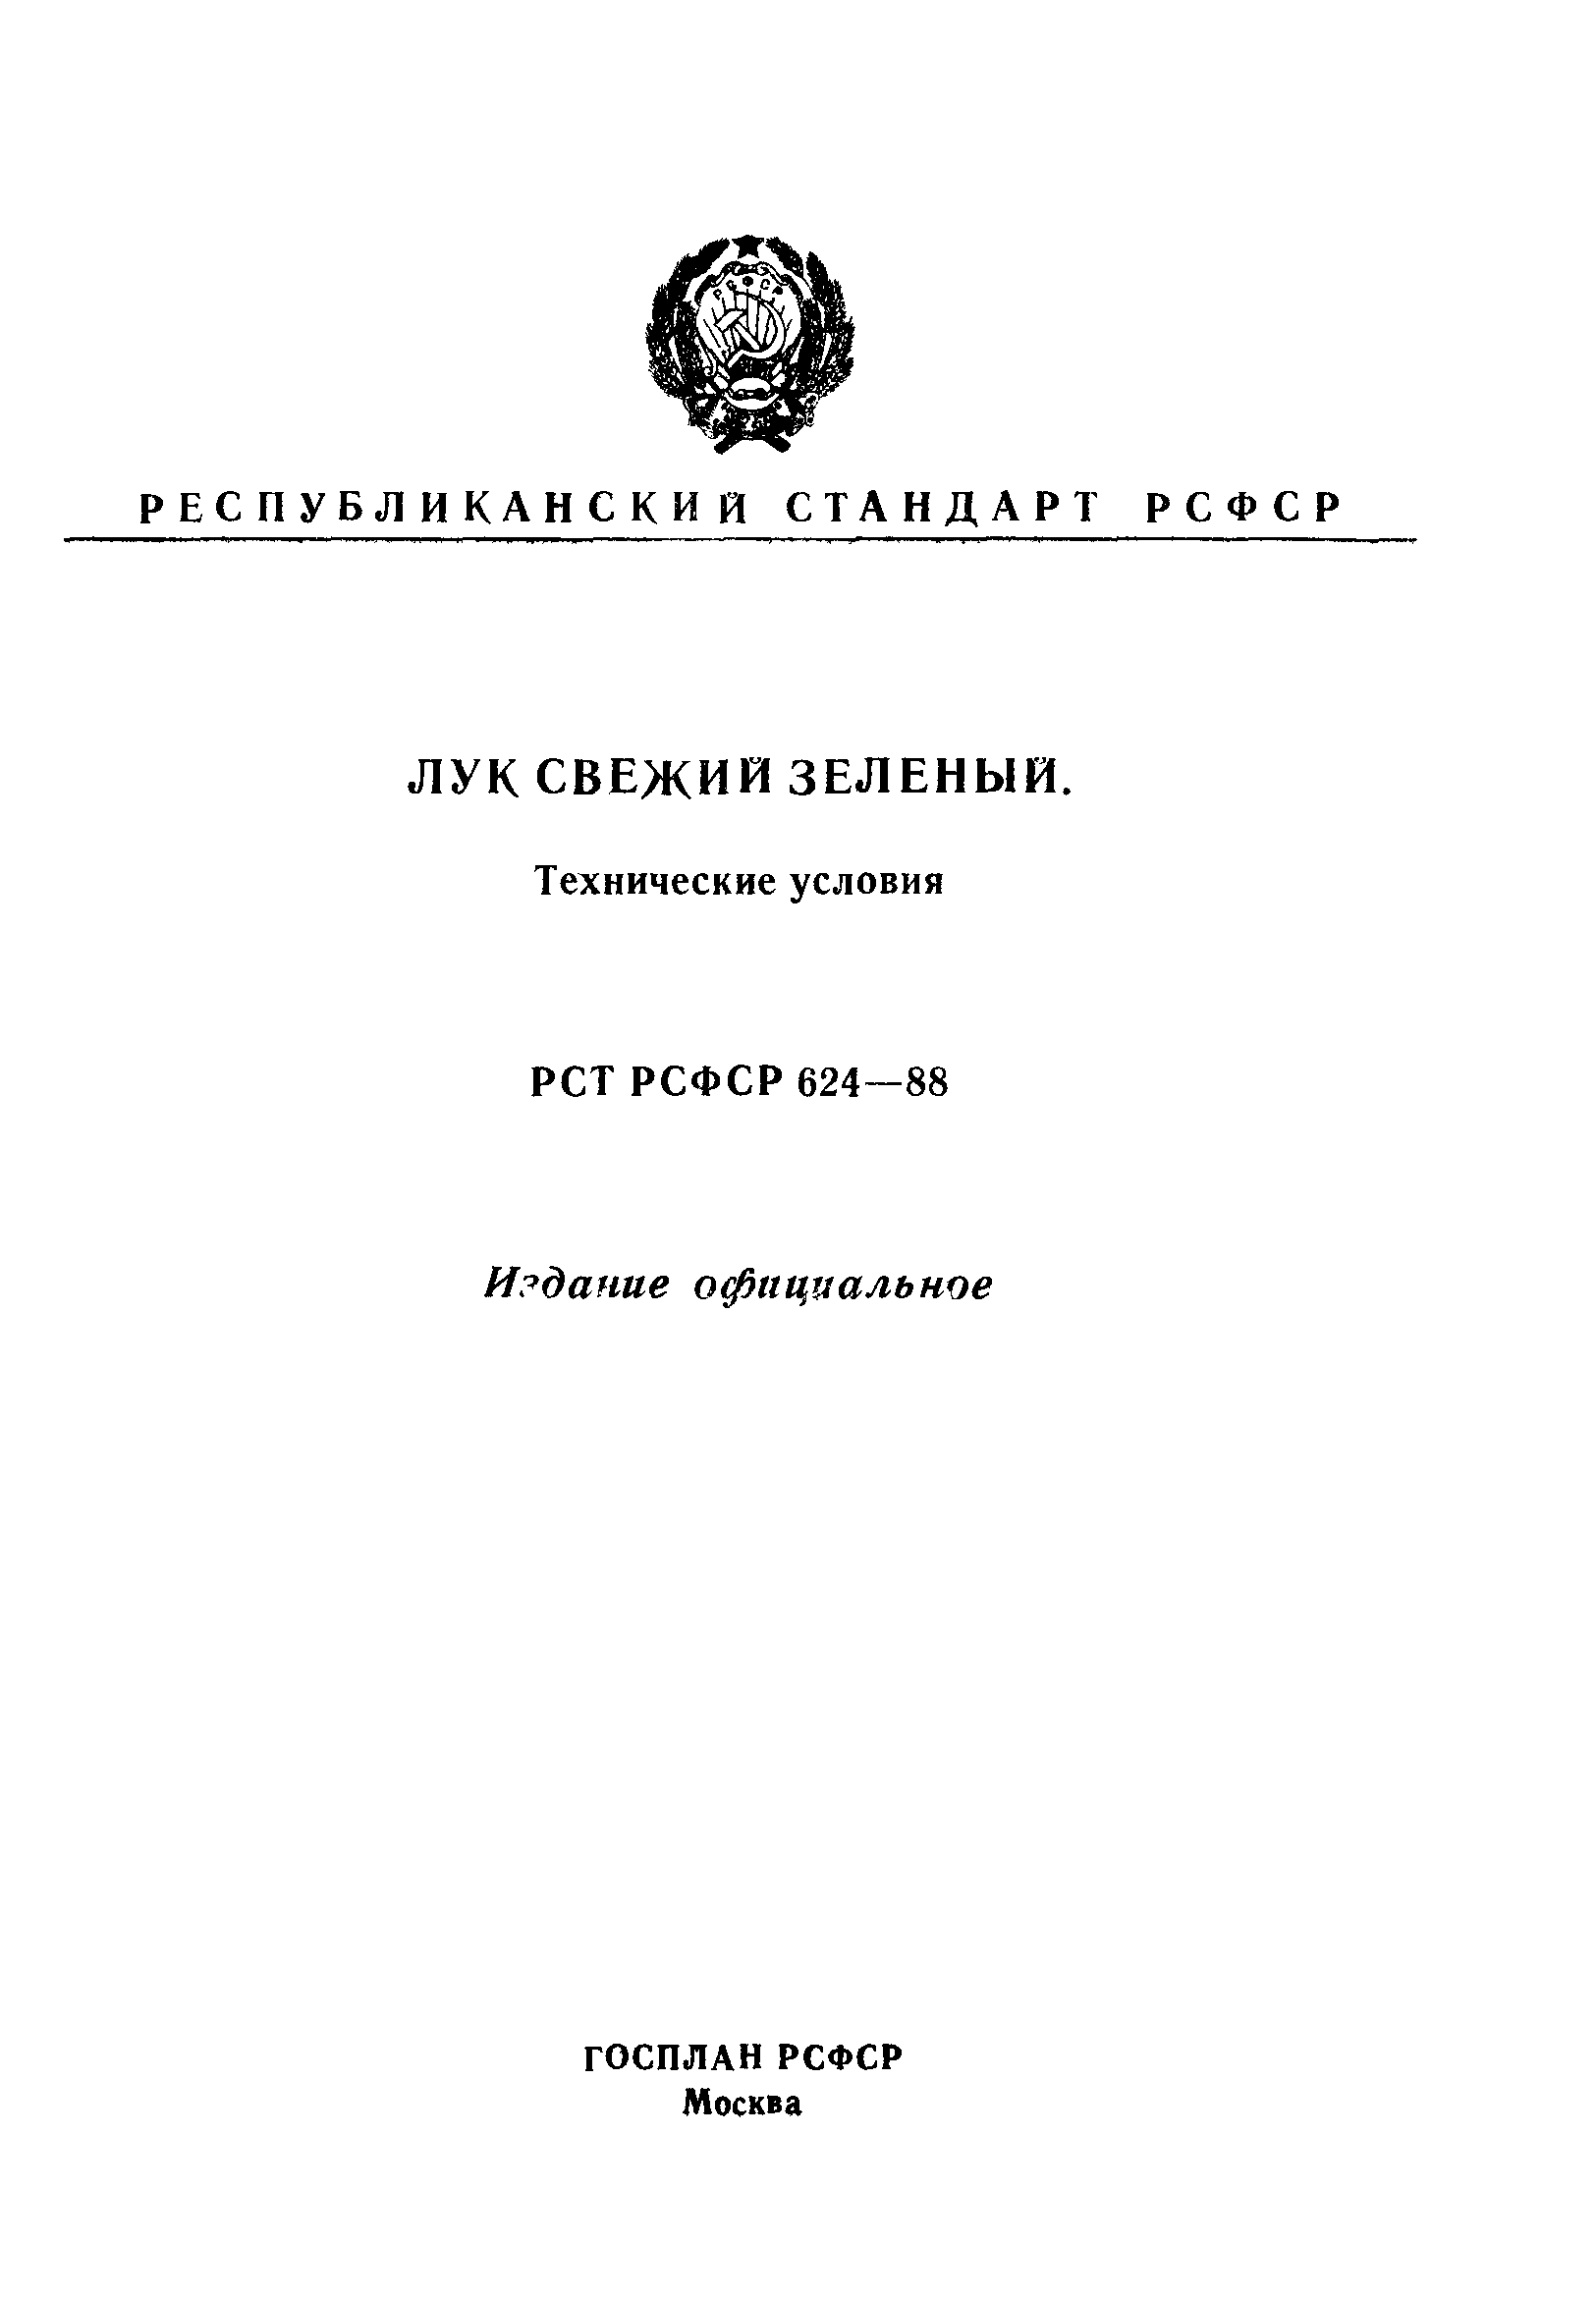 РСТ РСФСР 624-88